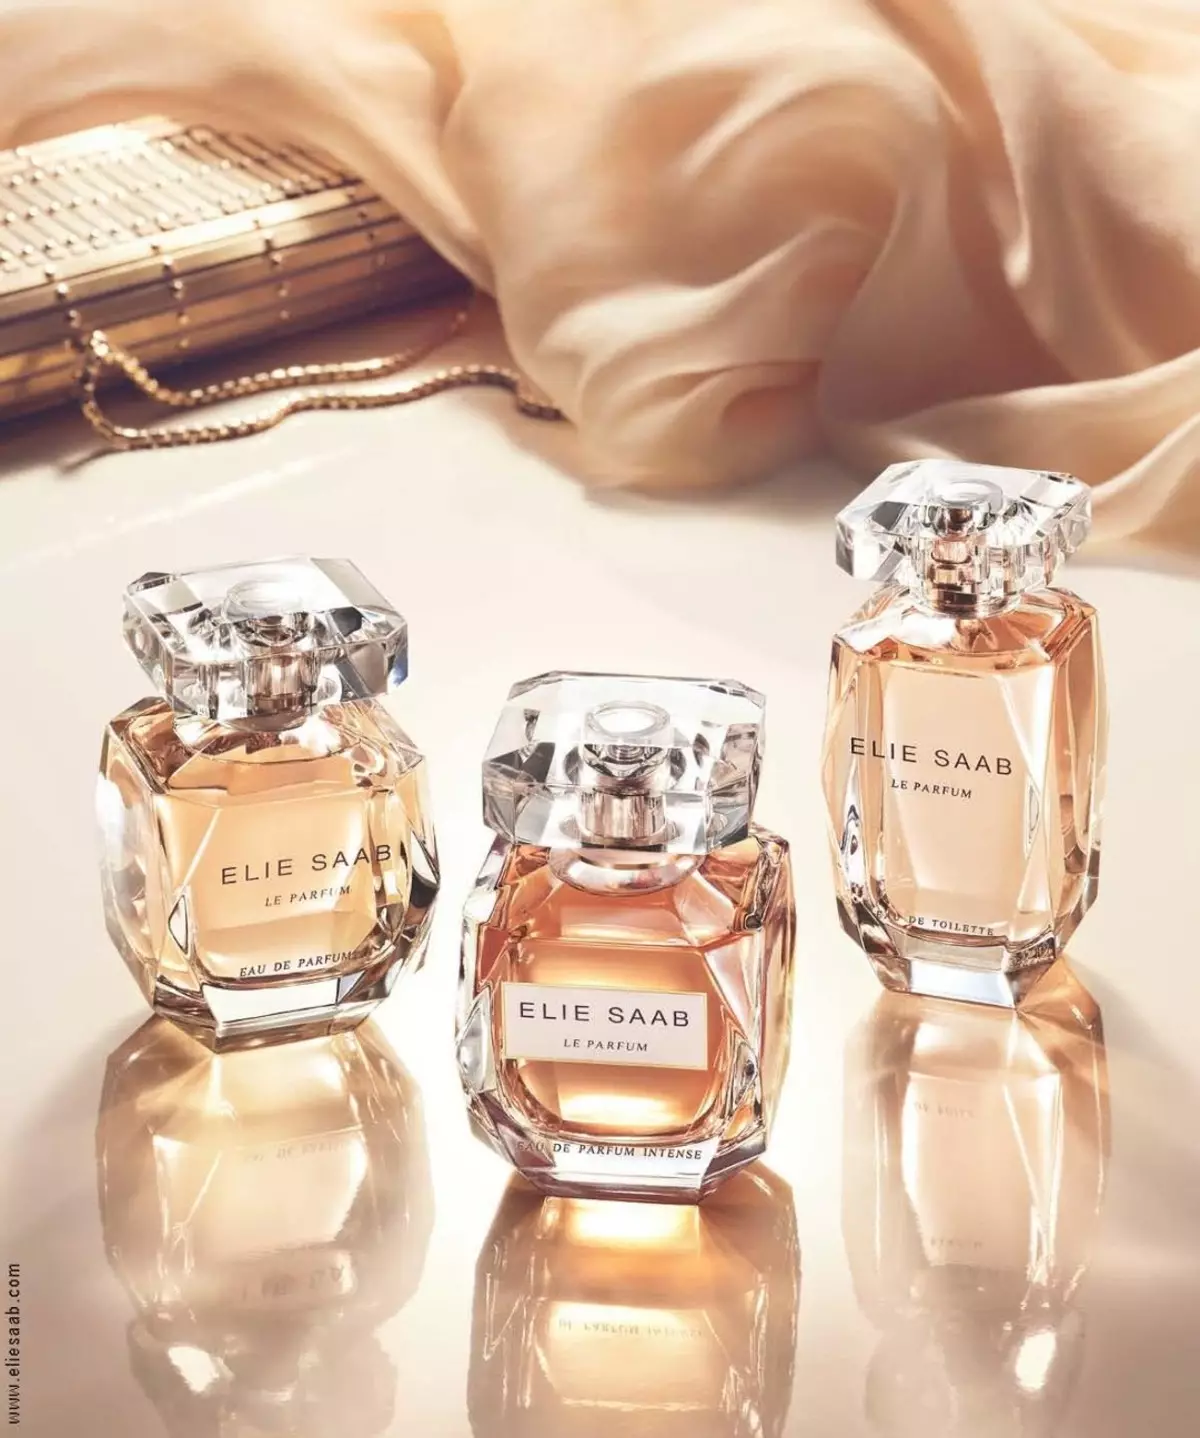 Perfum Elie Saab: Spirits Le Parfum Royal, Le Parfum Essentiel, Fille de Mentares, Le Parfum en White and Watch Water Rose Couture, Avis 25329_12